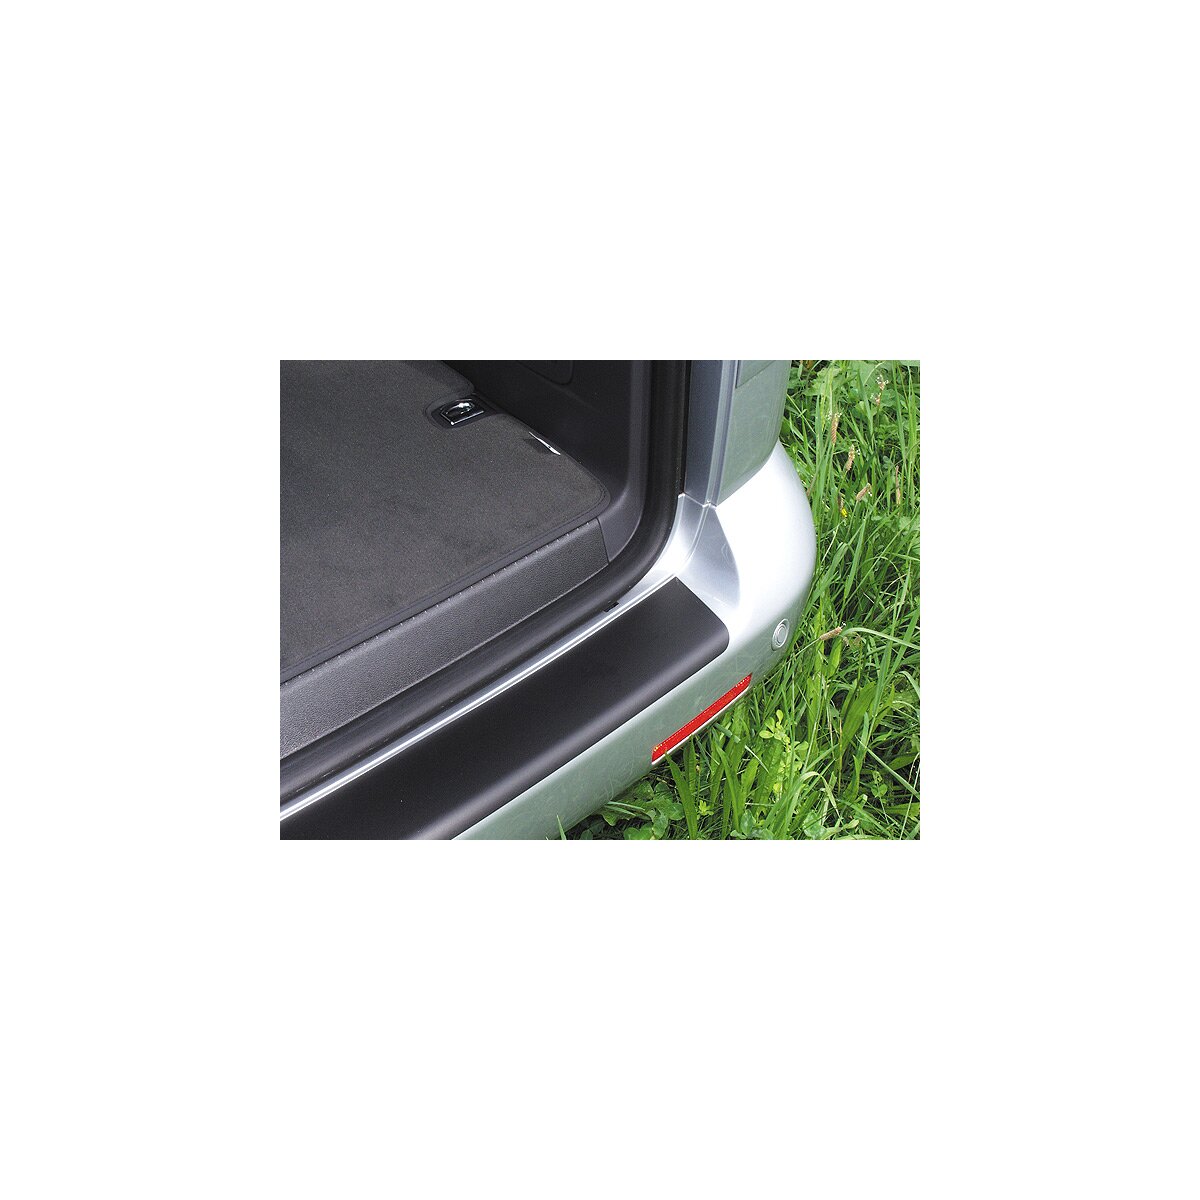 Su misura per VW Sportsvan dal 2014vernice pellicola protettiva paraurti trasparente 